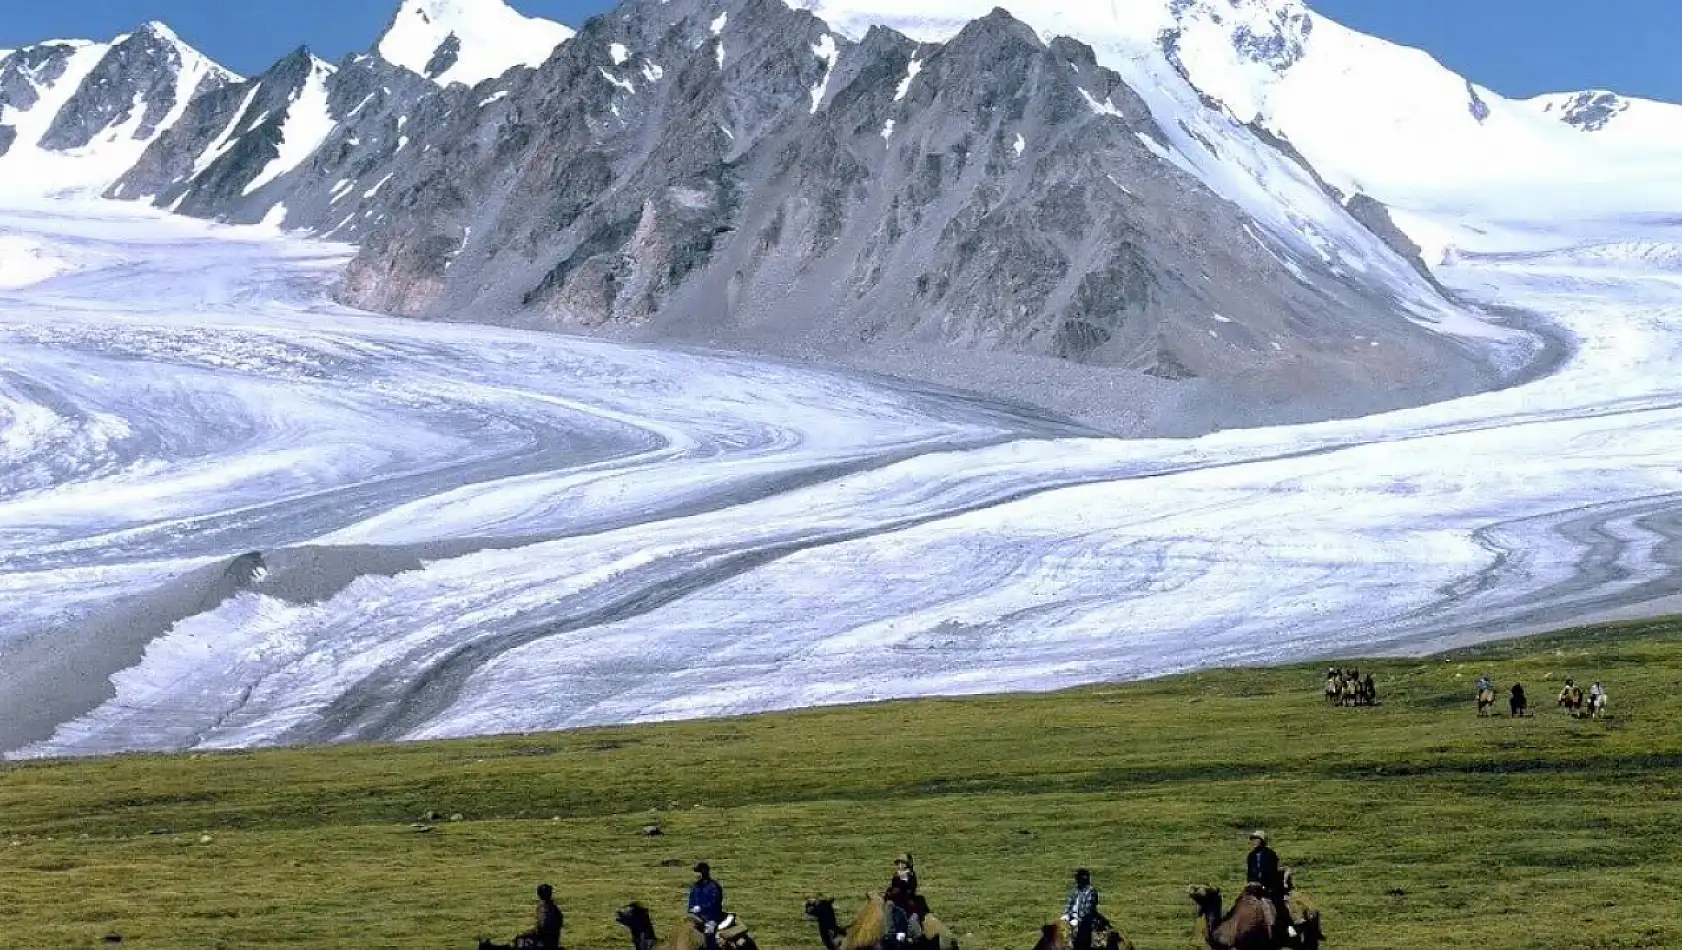 Altai Tavan Bogd Milli Parkı: Doğa Harikası ve Macera Tutkunlarının Vazgeçilmez Adresi